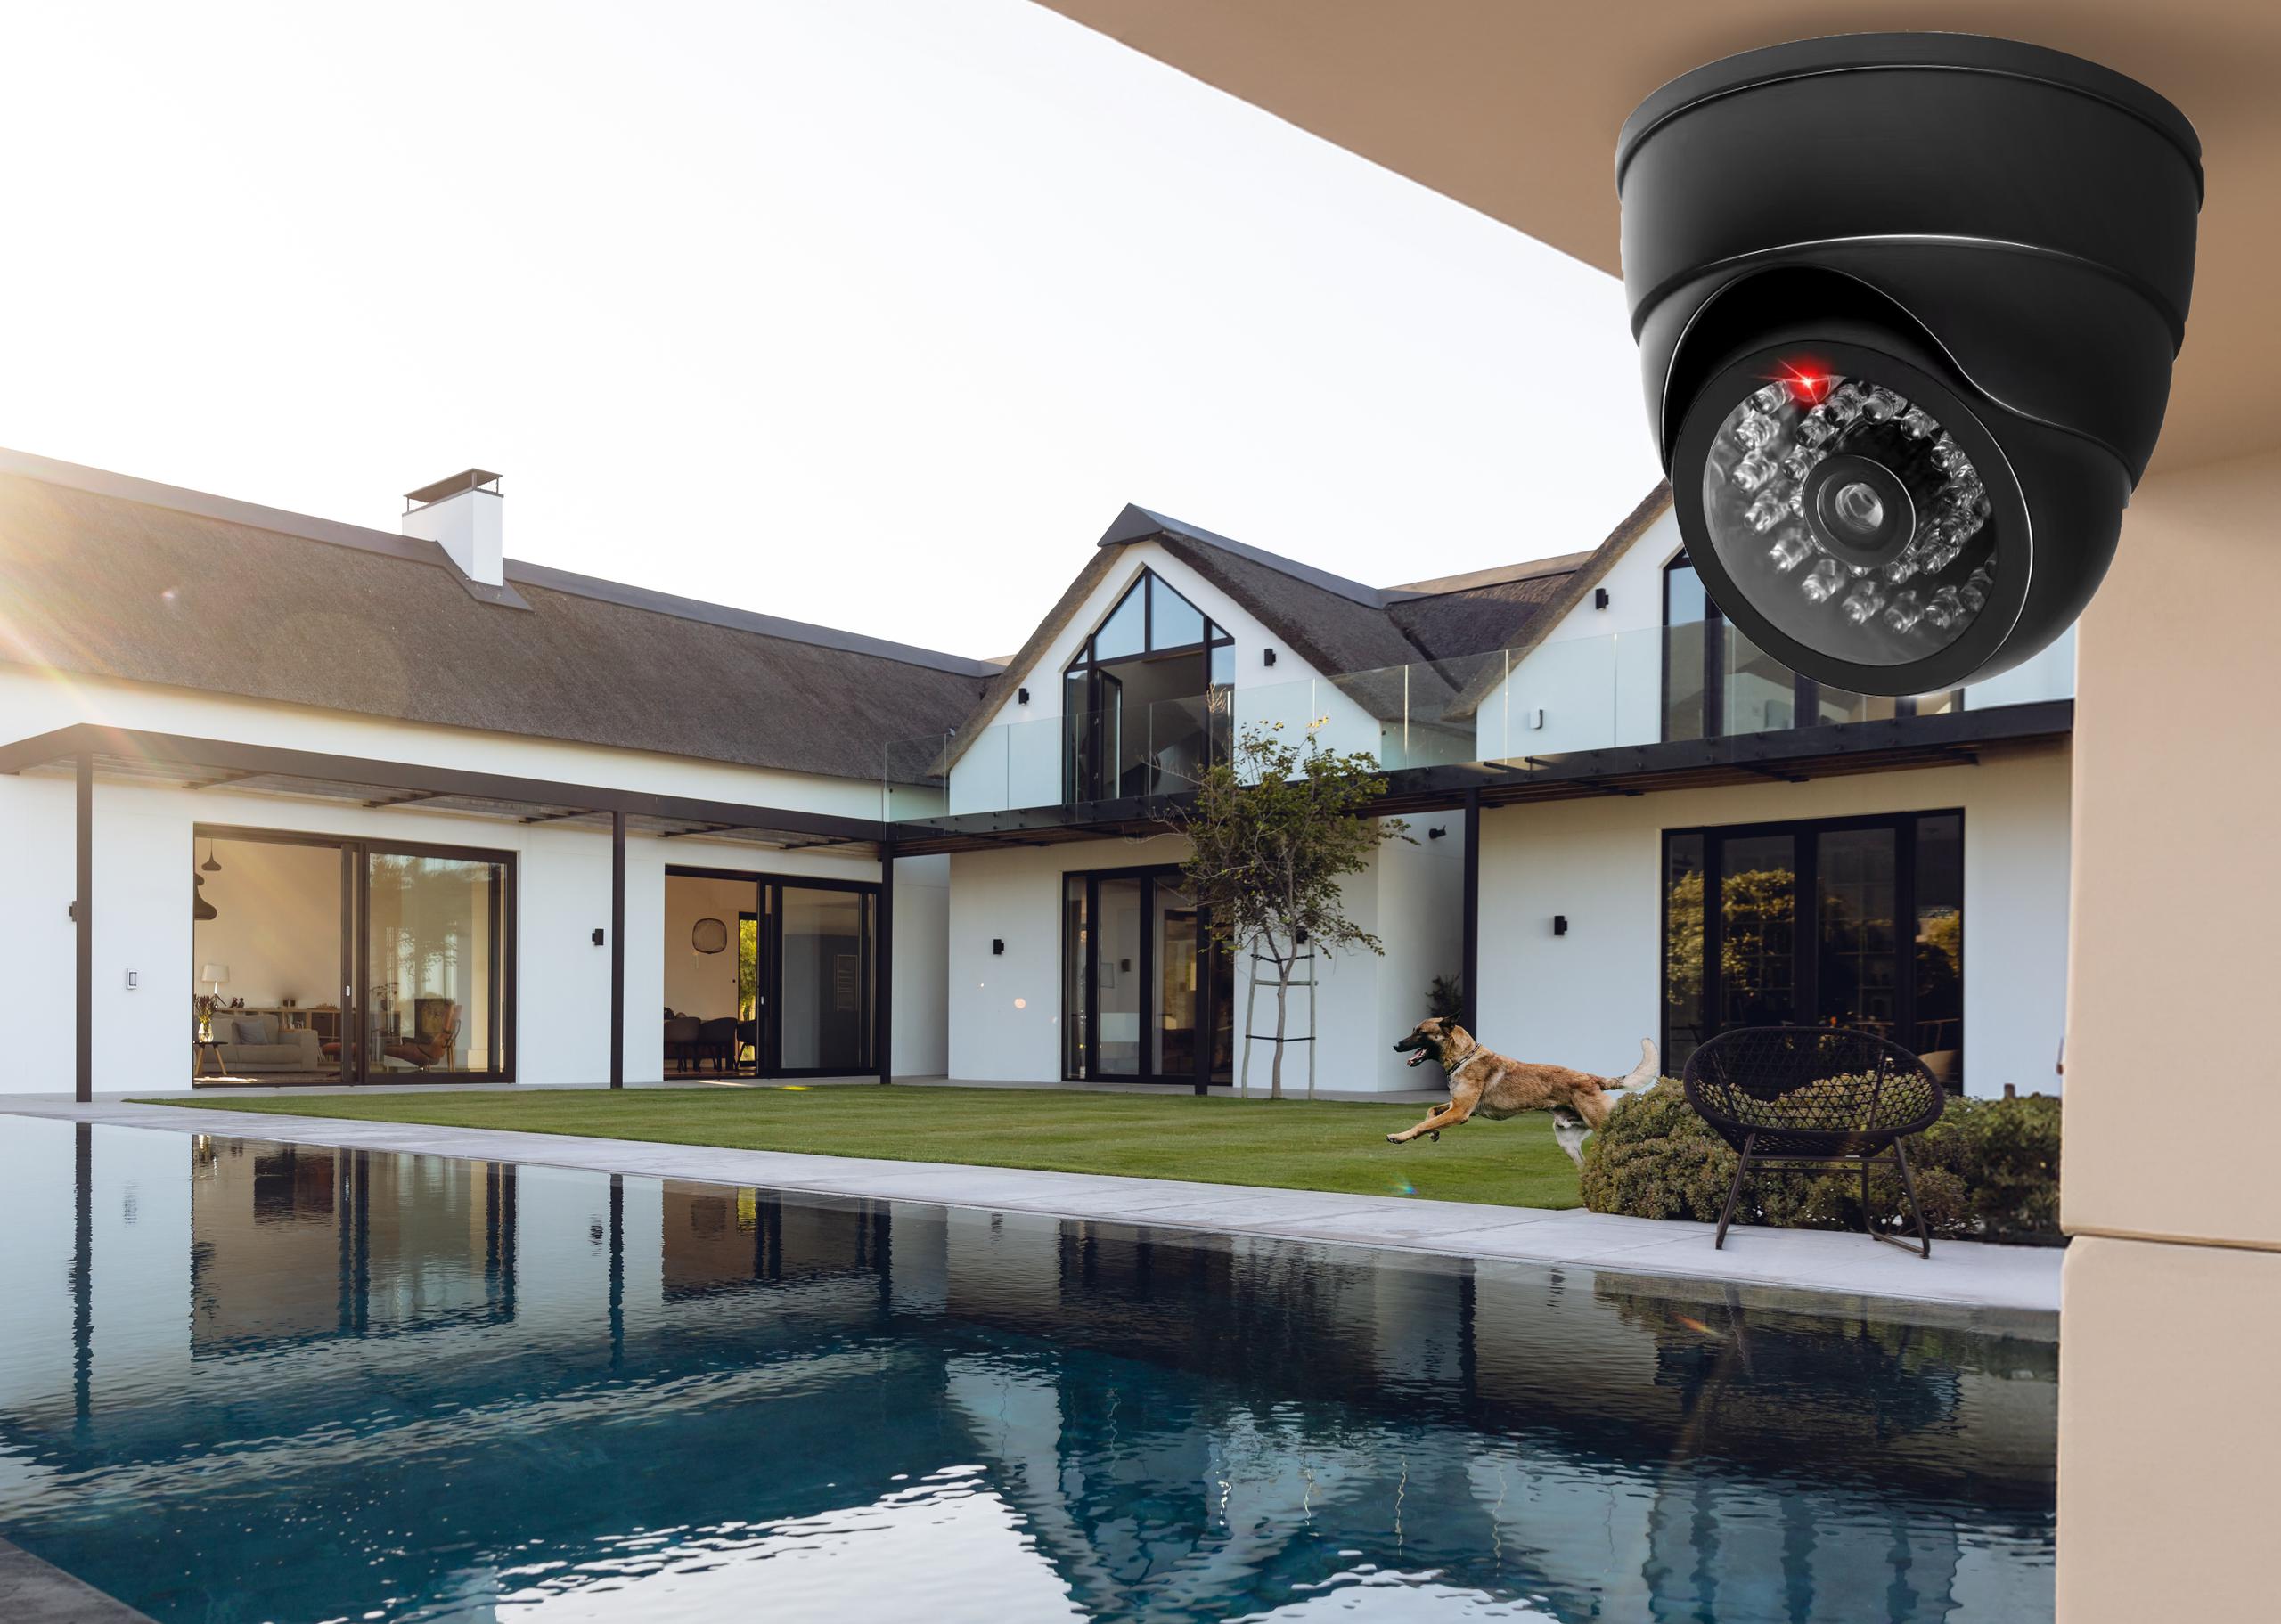 Atrapa kamery kopułkowej do monitoringu CCTV do użytku wewnątrz pomieszczeń lub pod zadaszeniem